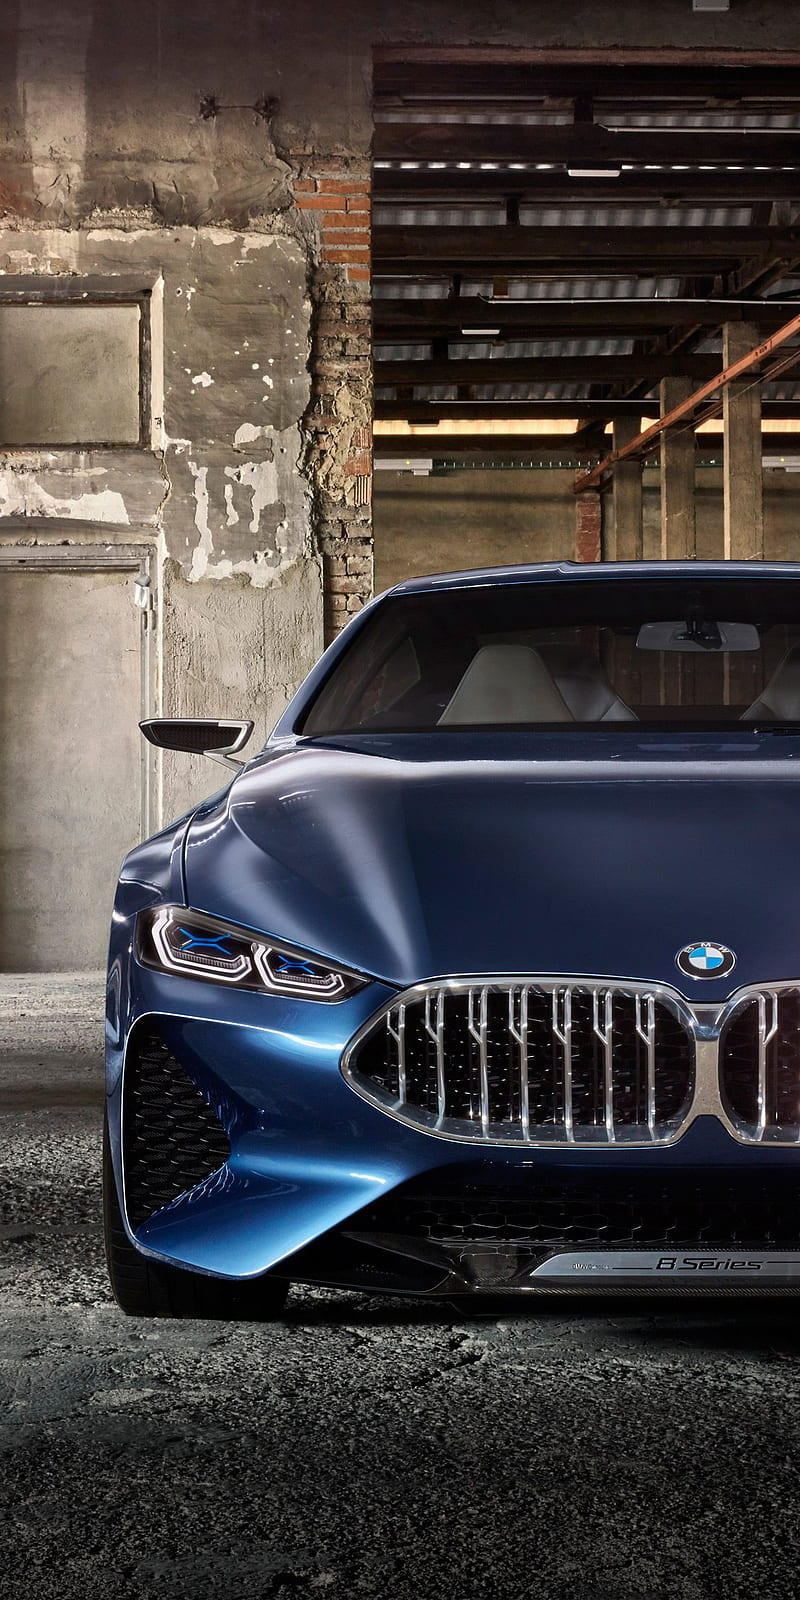 Những chiếc xe hơi concept của BMW luôn khiến cộng đồng yêu xe phải trầm trồ với sự độc đáo và tuyệt vời. BMW 8 Series concept chắc chắn sẽ là một lựa chọn hấp dẫn để tìm hiểu về sự đột phá và sáng tạo trong ngành công nghiệp xe hơi.